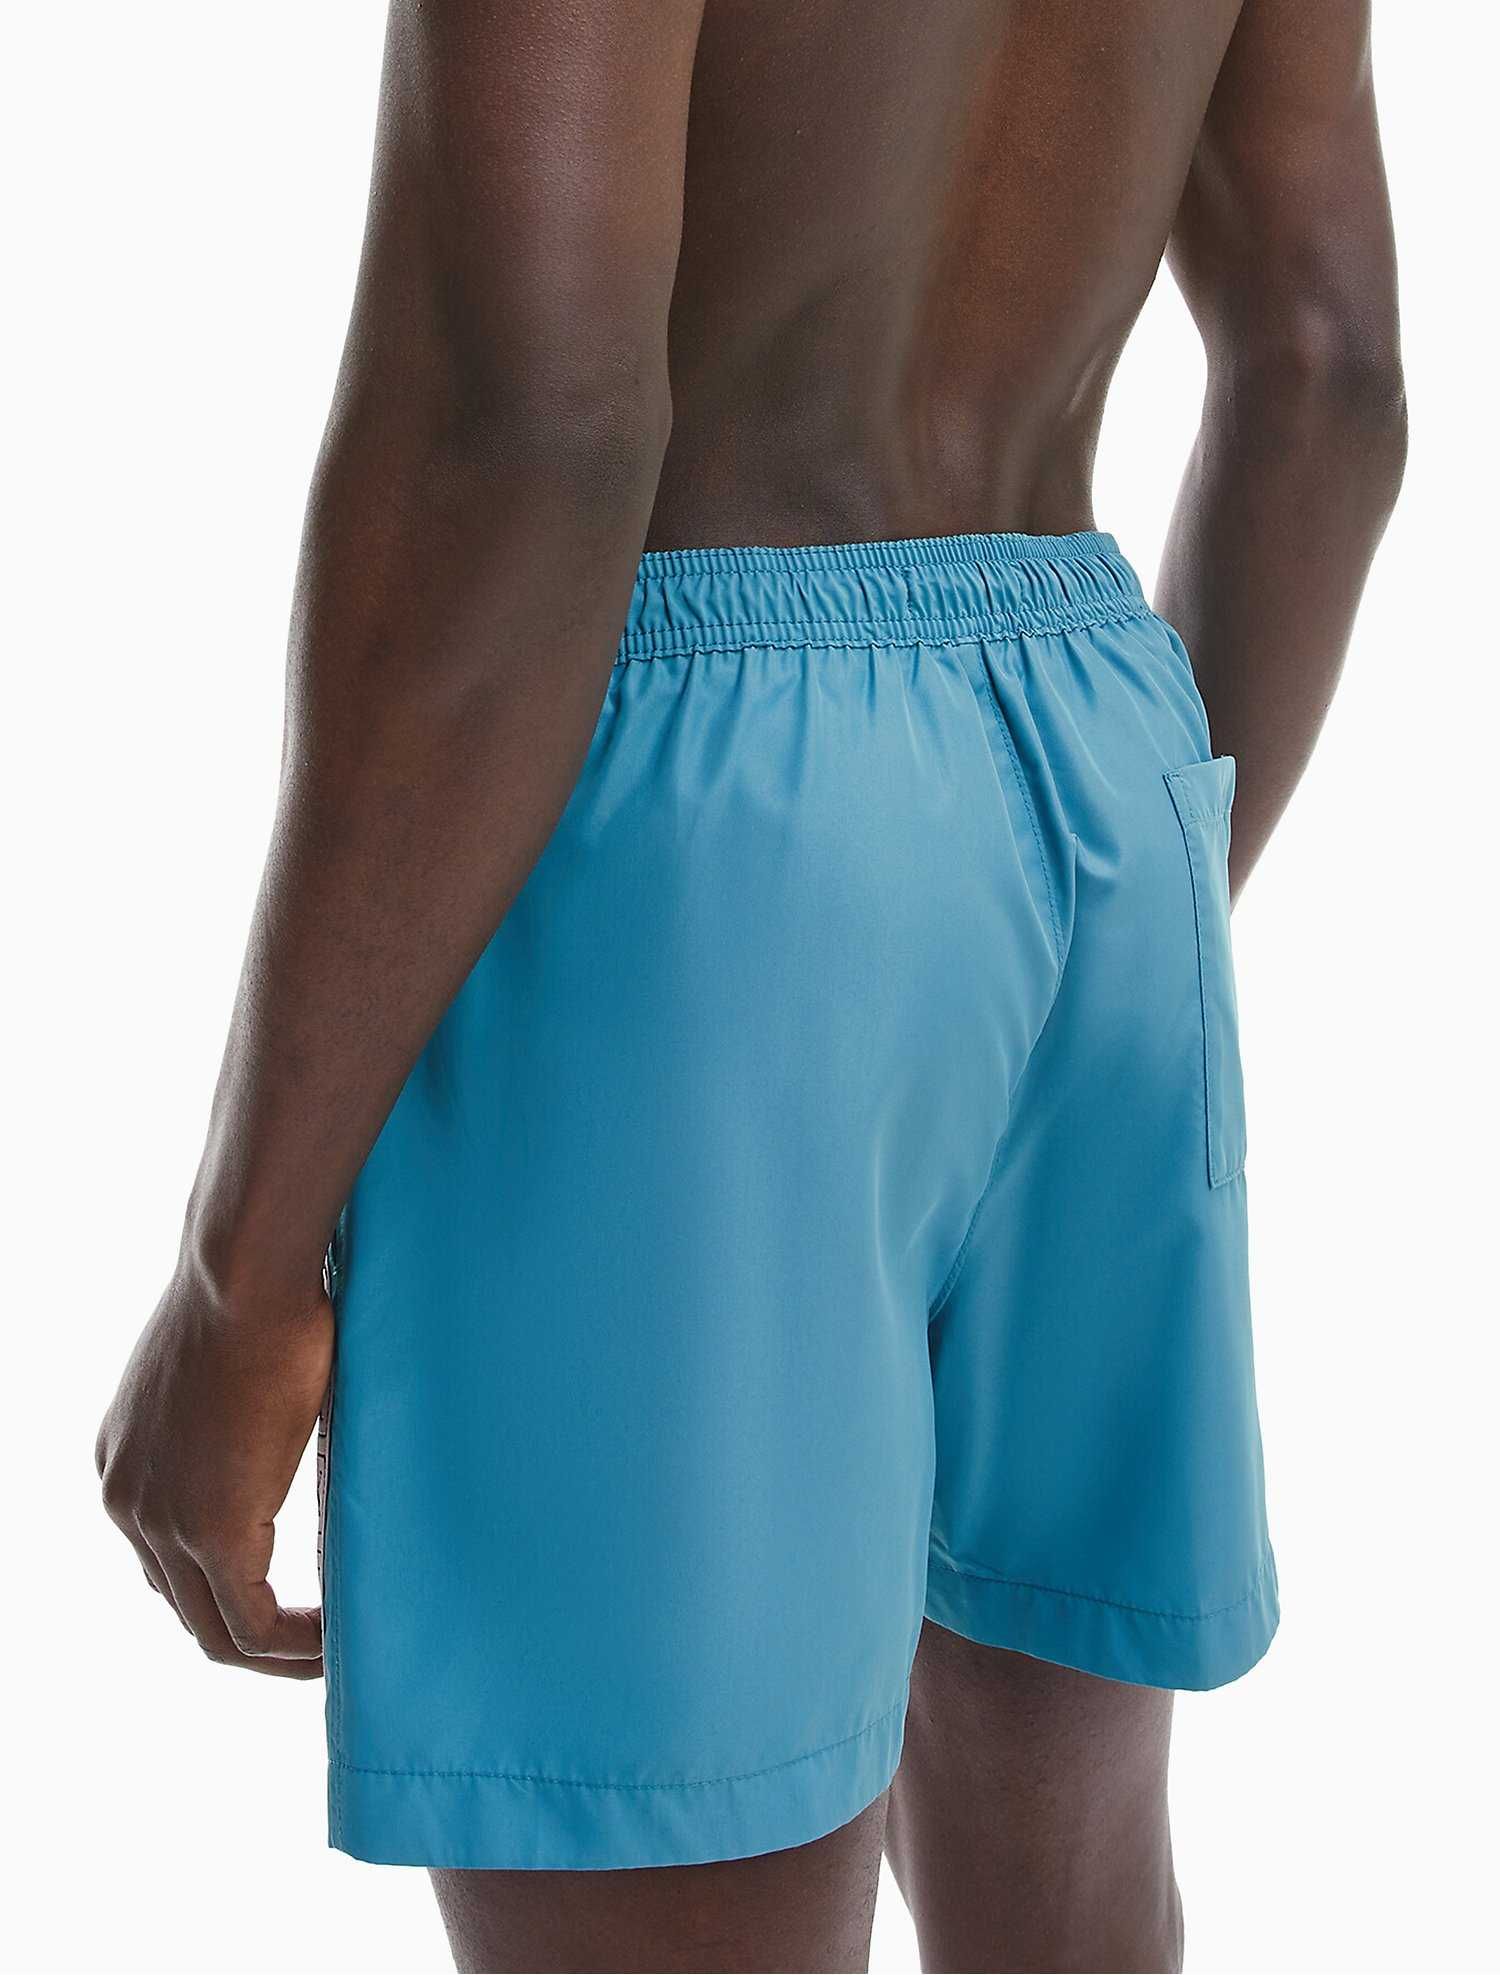 Новые шорты - плавки calvin klein (ck swim teal shorts)с америки S